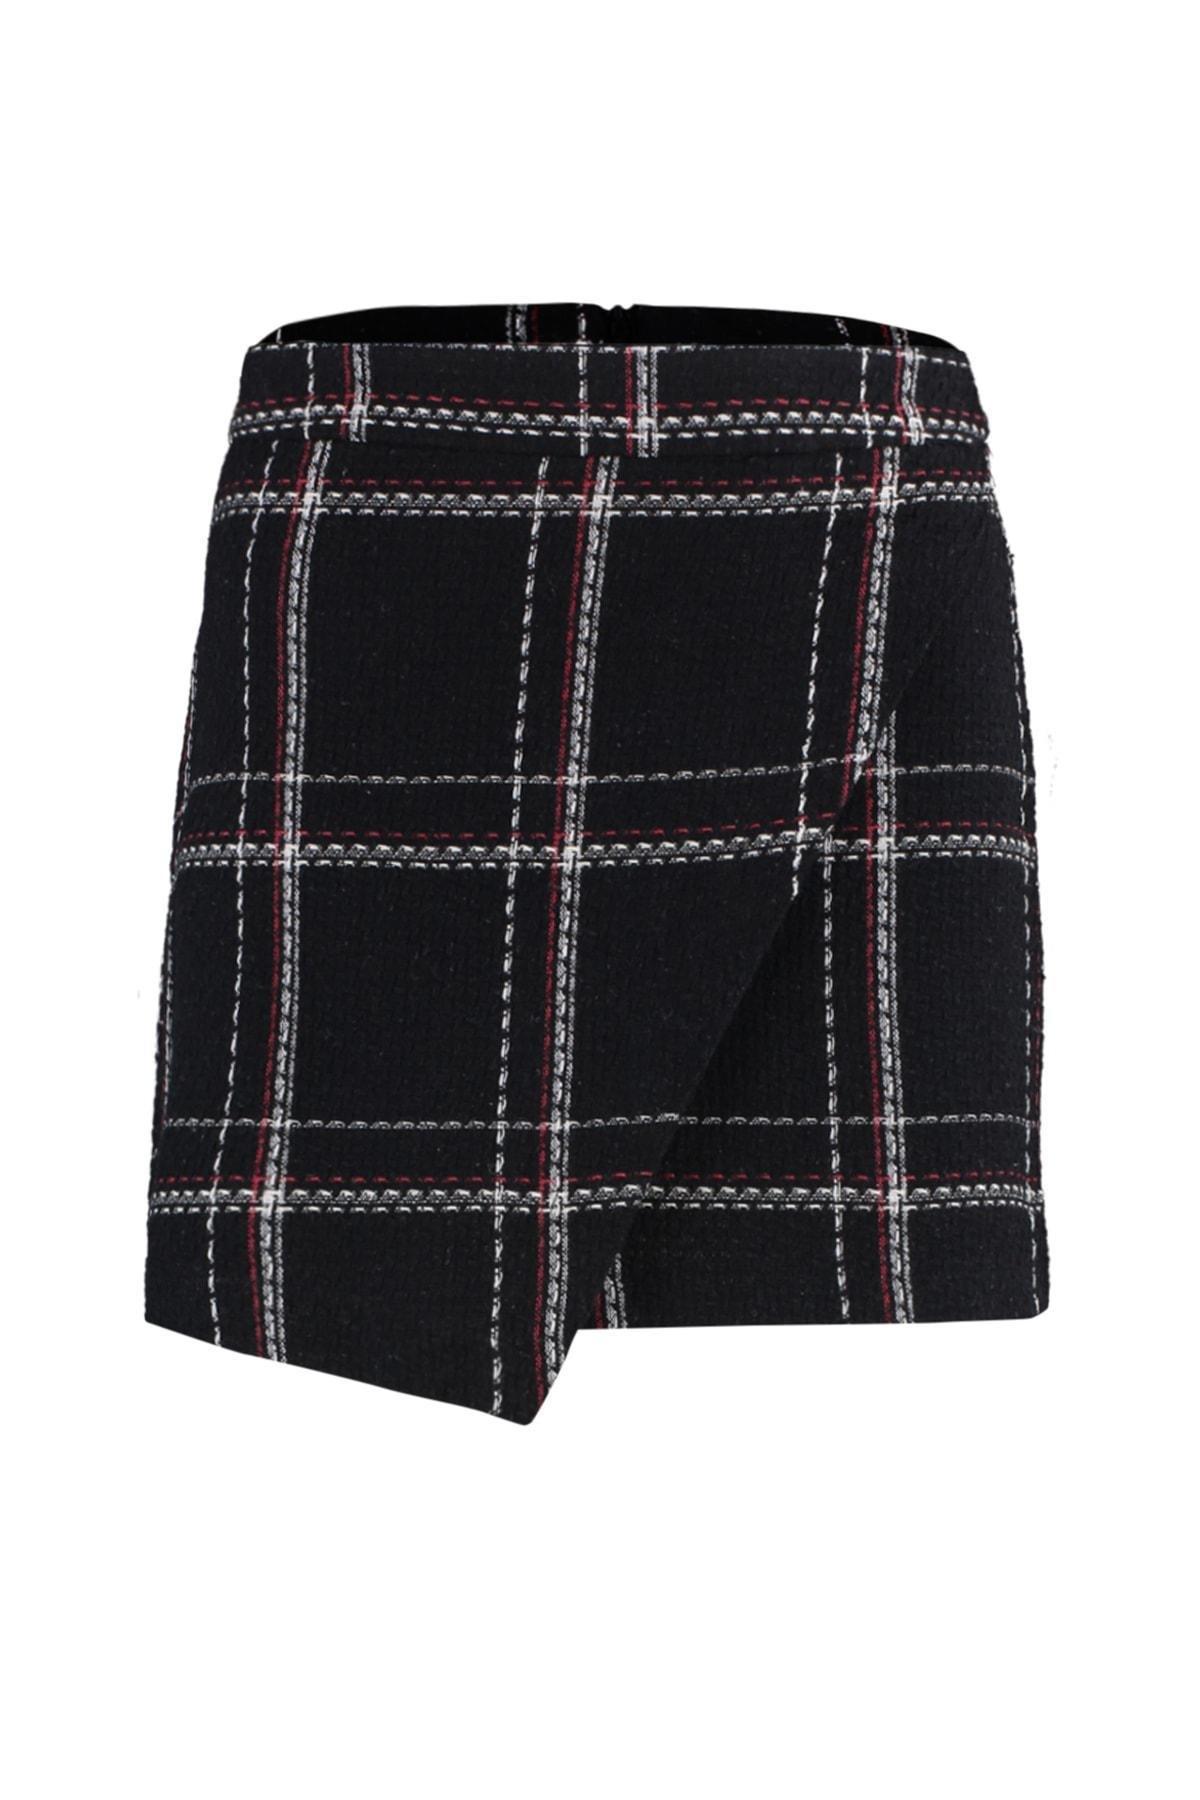 Trendyol - Black Mini Skirt